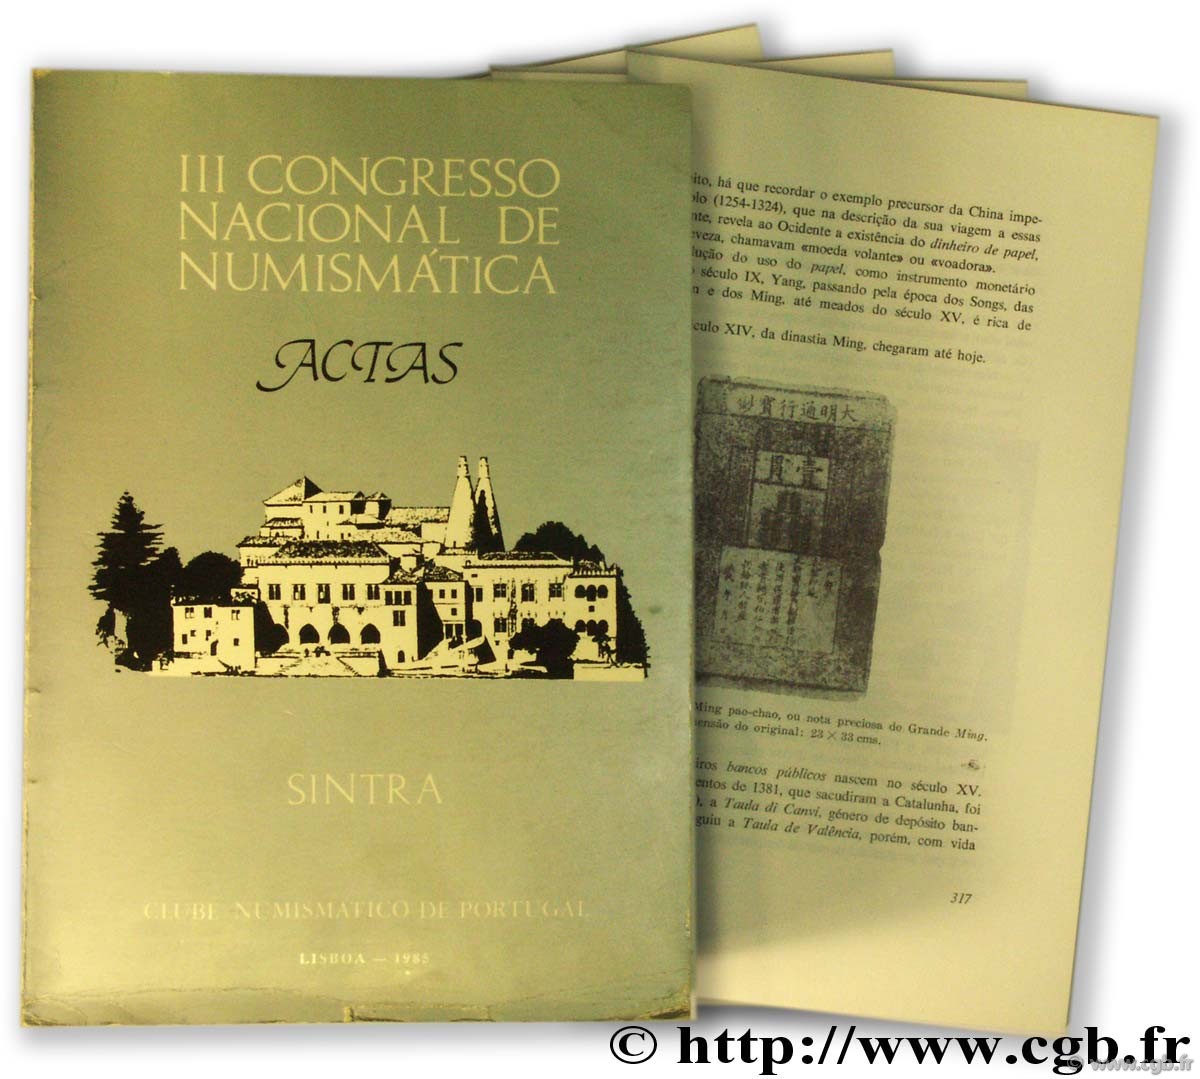 III Congress Nacional de Numismatica. Actas. Sintra 